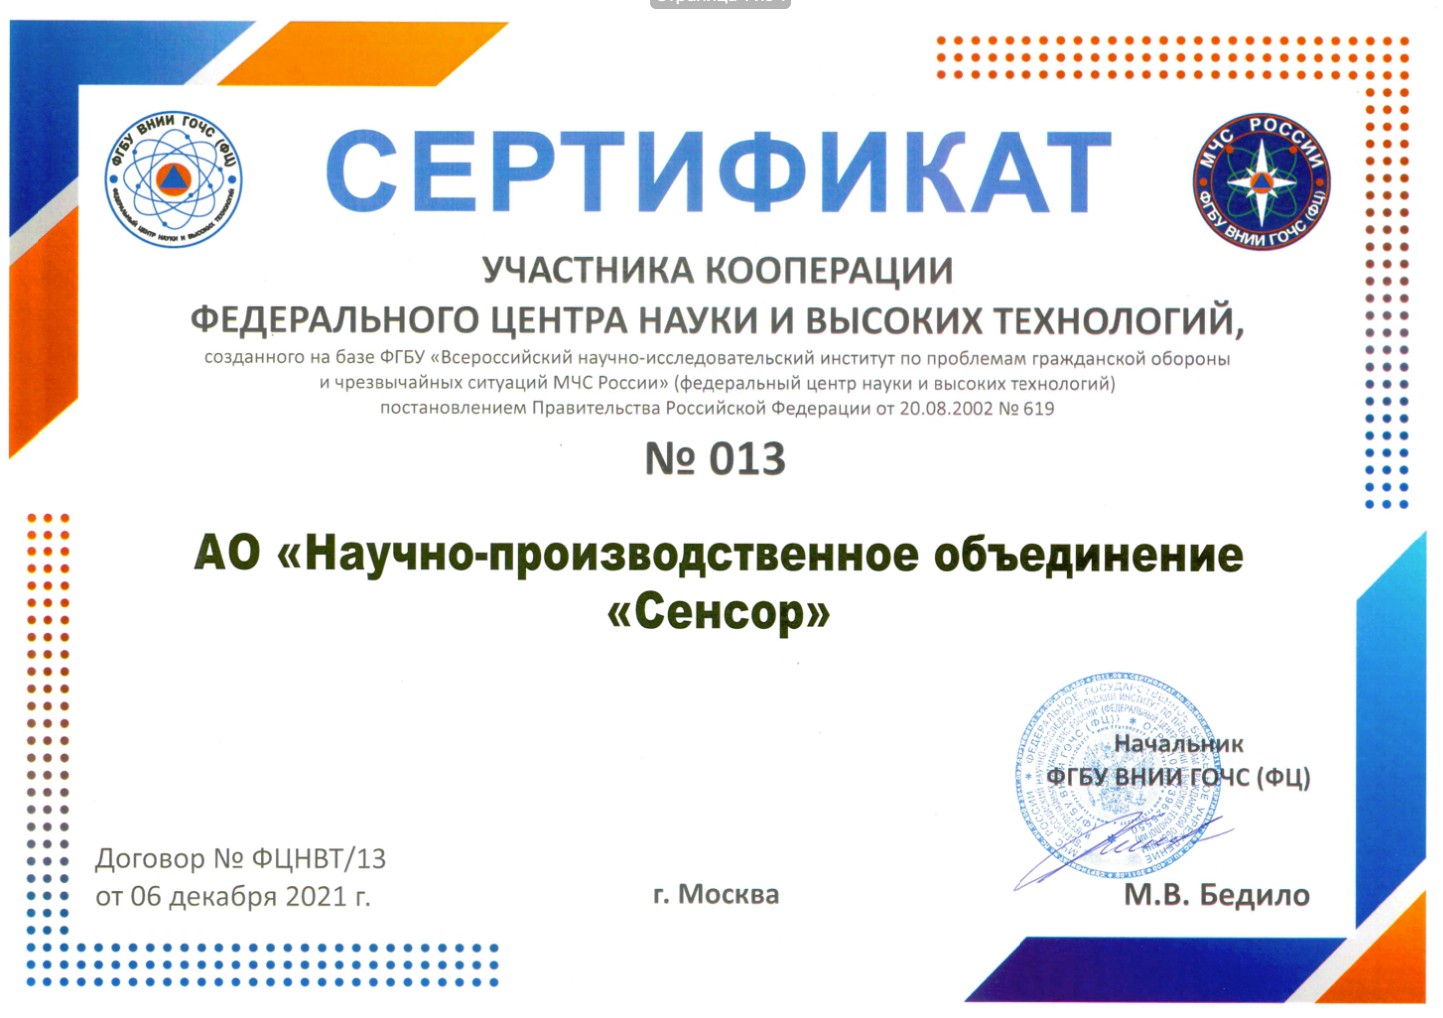 Сертификат участника ВНИИ ГОЧС